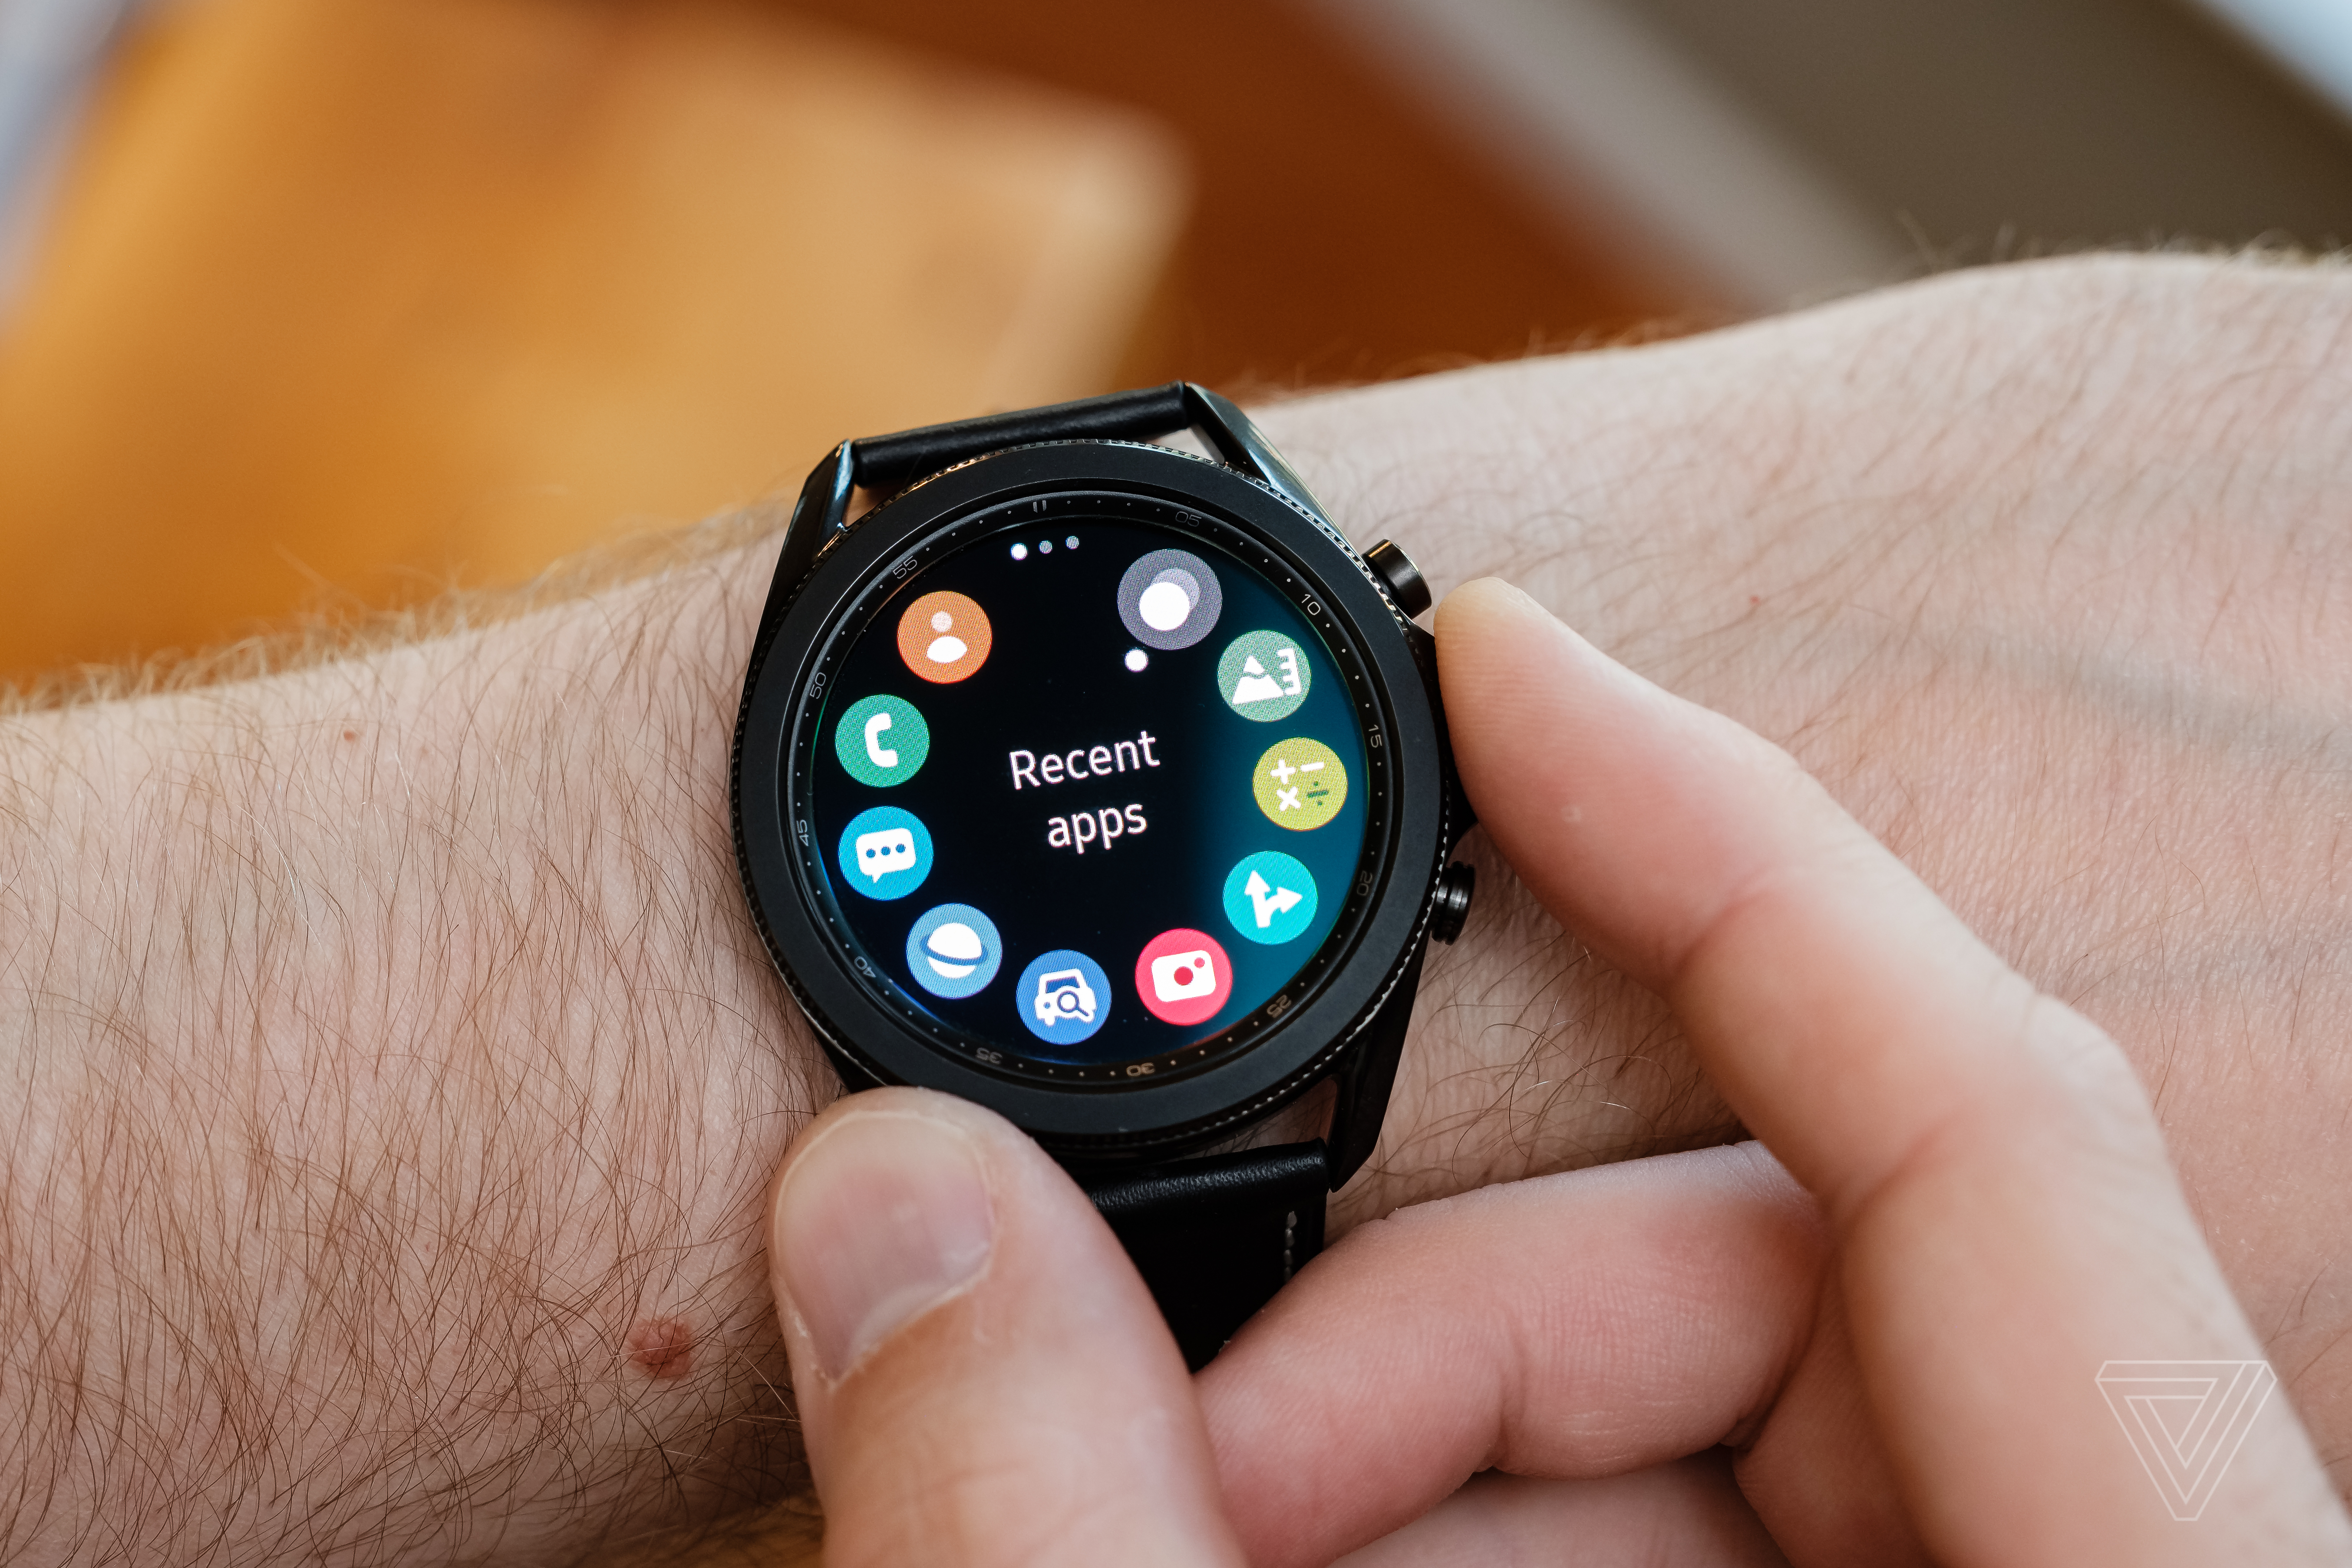 A close-up of Samsung Galaxy Watch 3’s app menu